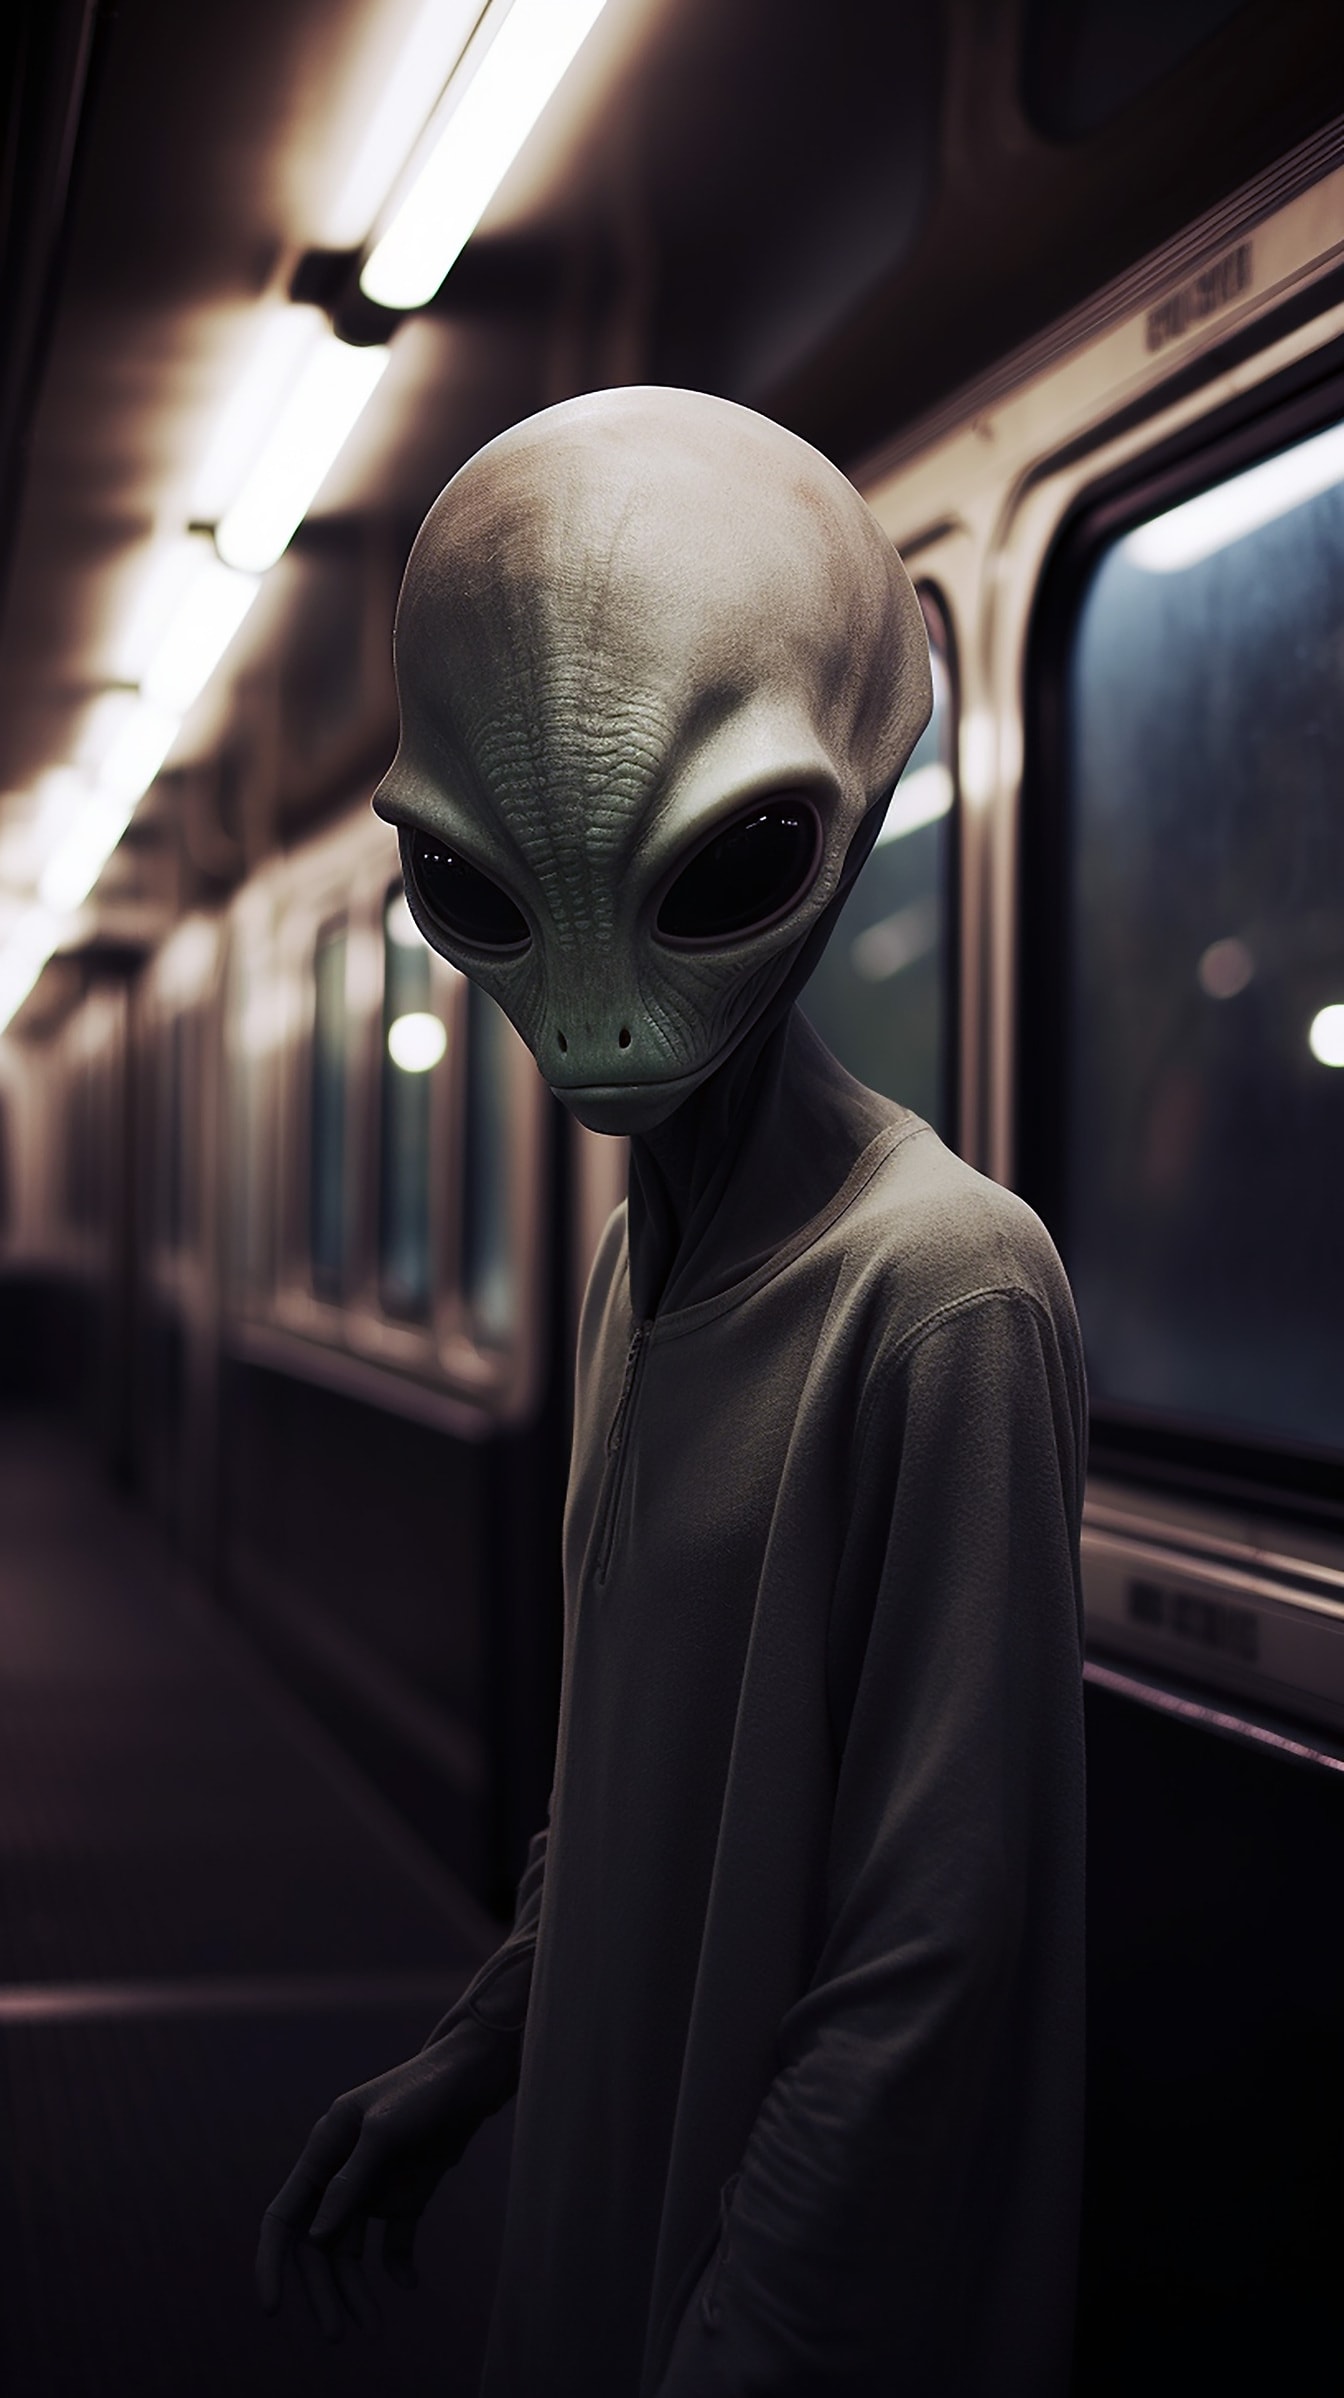 Sinh vật ngoài hành tinh với đôi mắt to bên trong tàu ở ga tàu điện ngầm